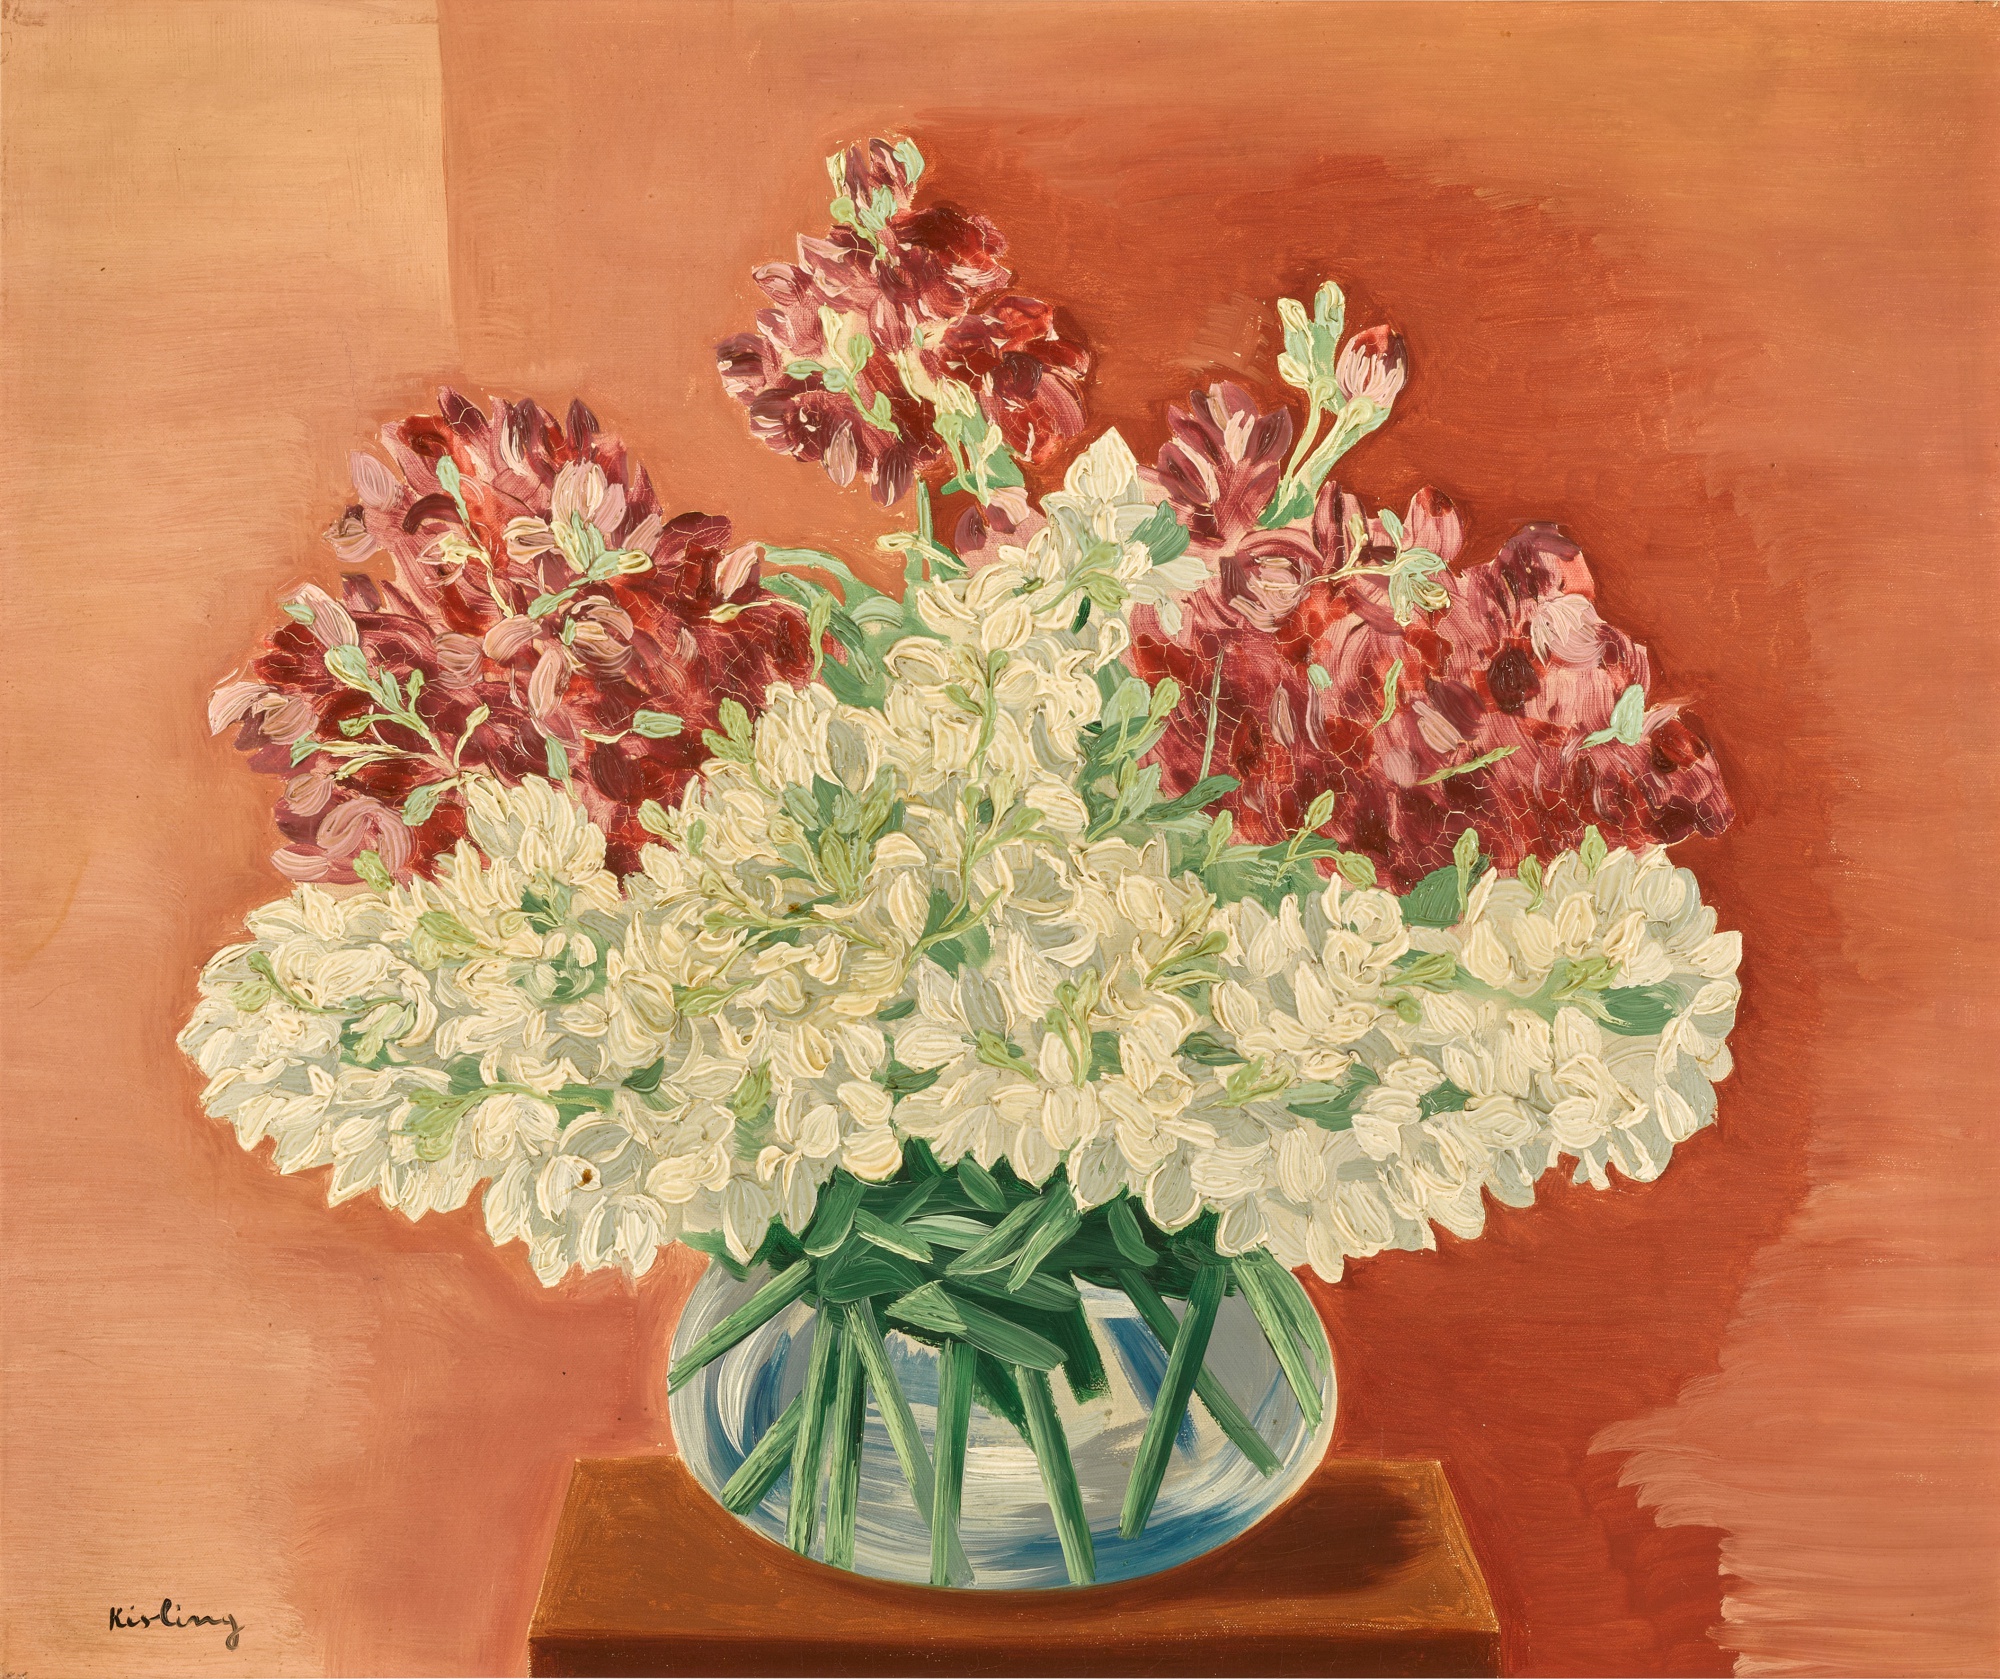 Mojżesz Kisling (1891-1953) "Kwiaty w wazonie", źródło: Sotheby's